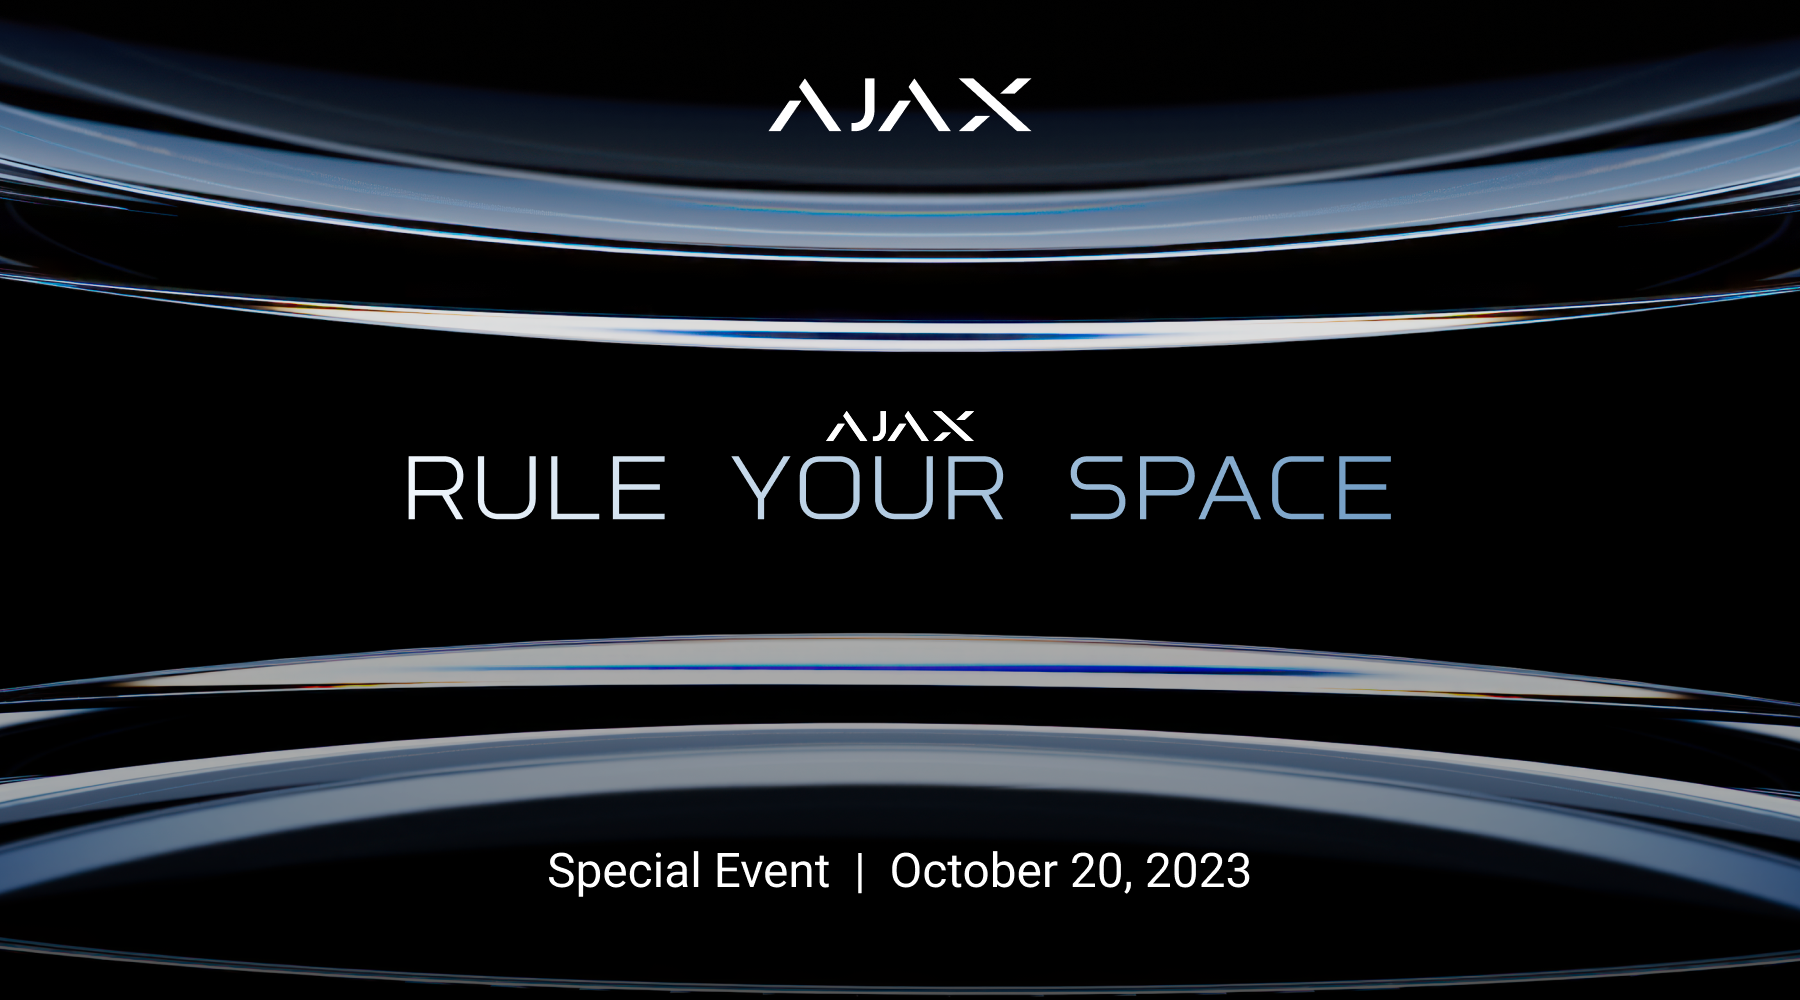 The 2023 Ajax Special Event